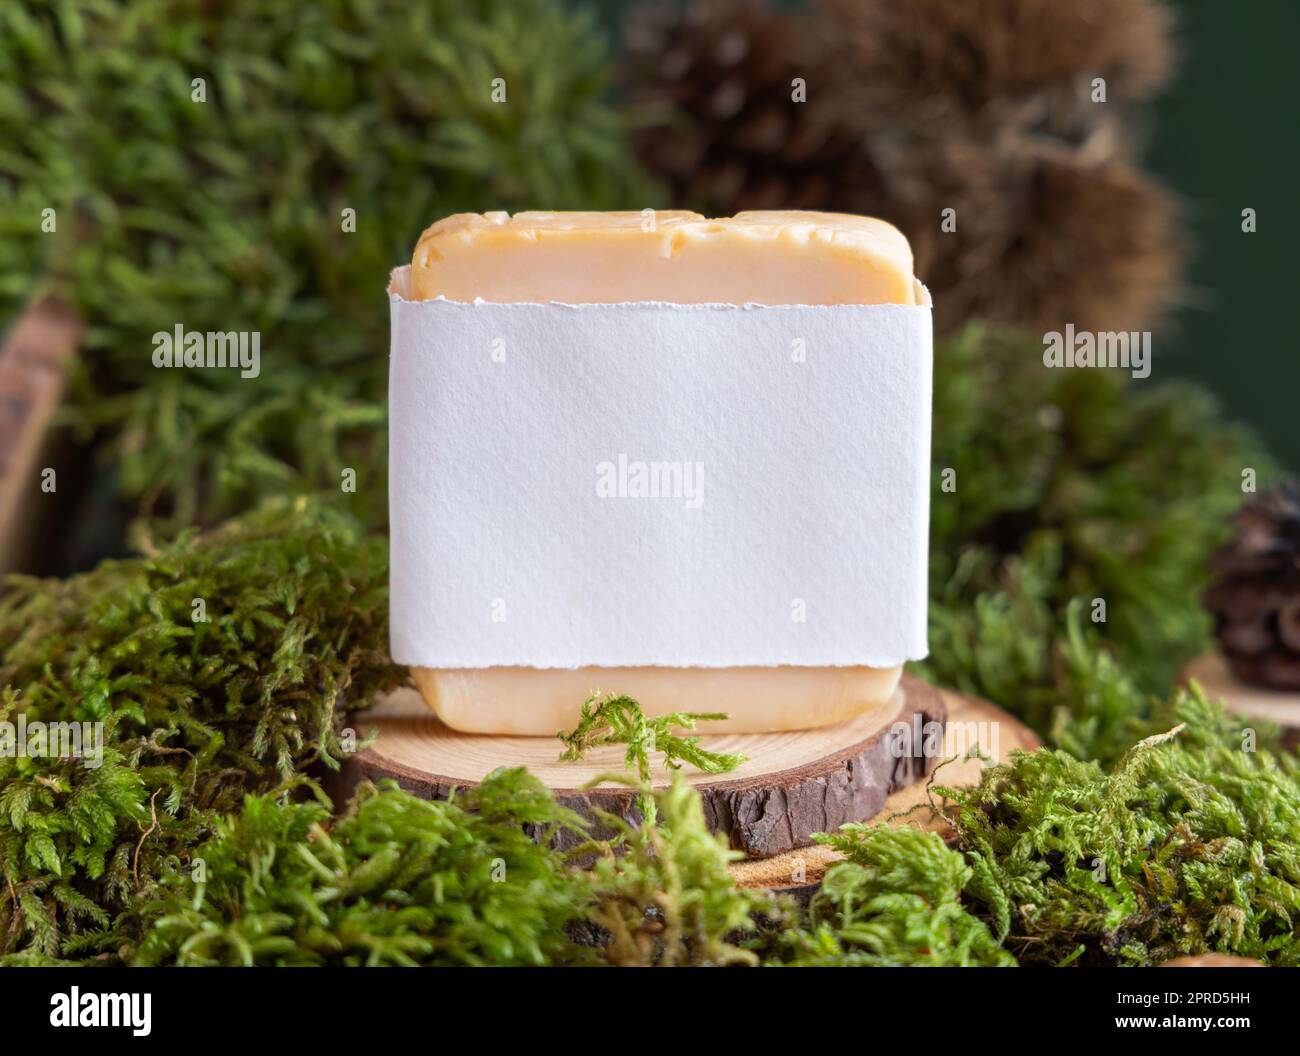 Porte-savon avec étiquette vierge sur pièce en bois près de mousse verte, gros plan. Maquette cosmétique naturelle Banque D'Images